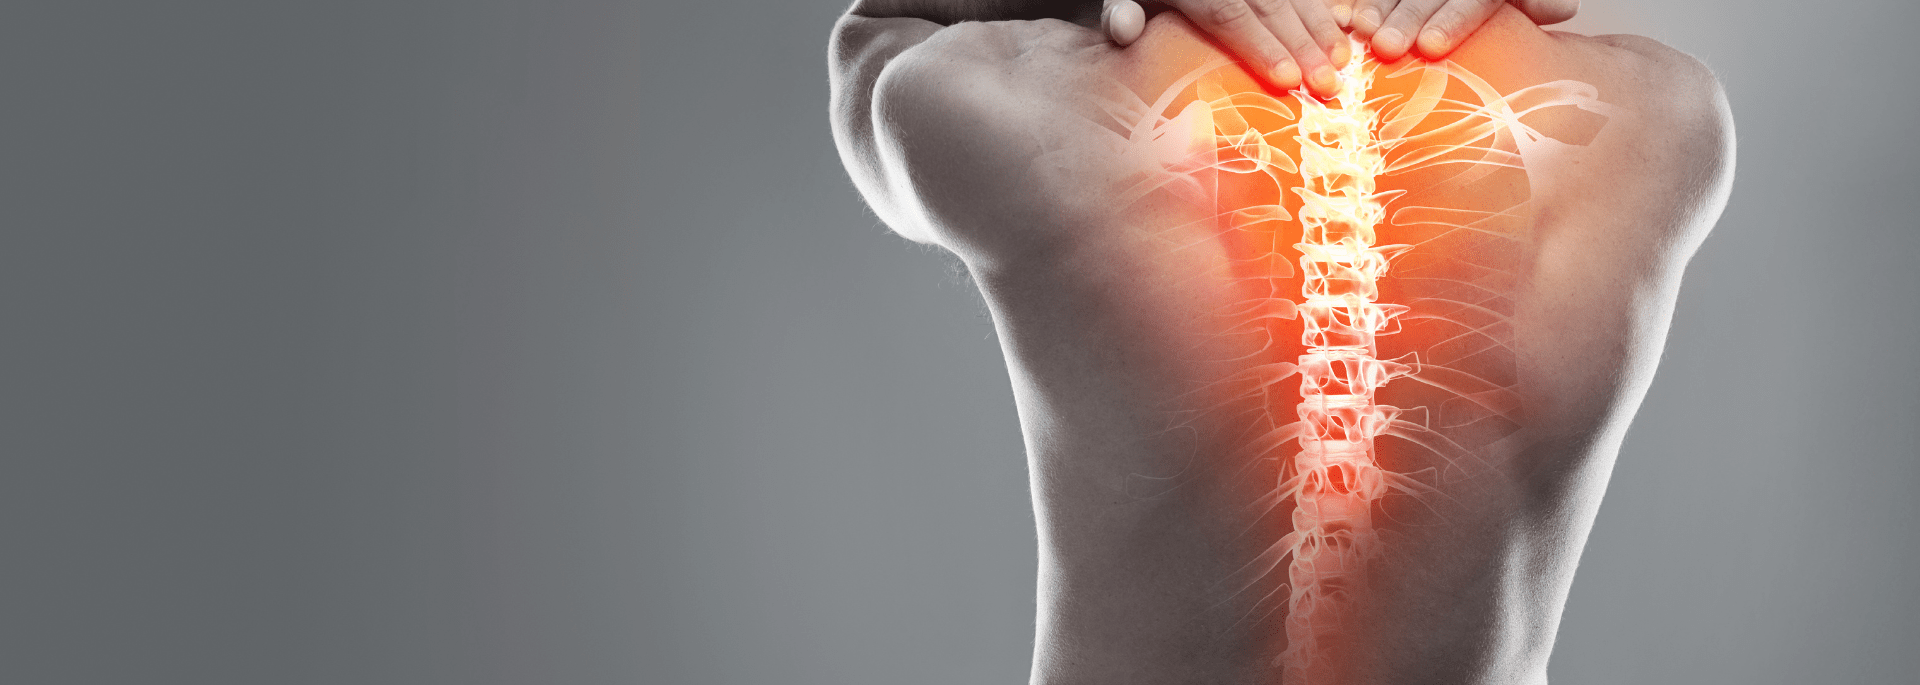 PRT - Periradikuläre Rückenschmerztherapie